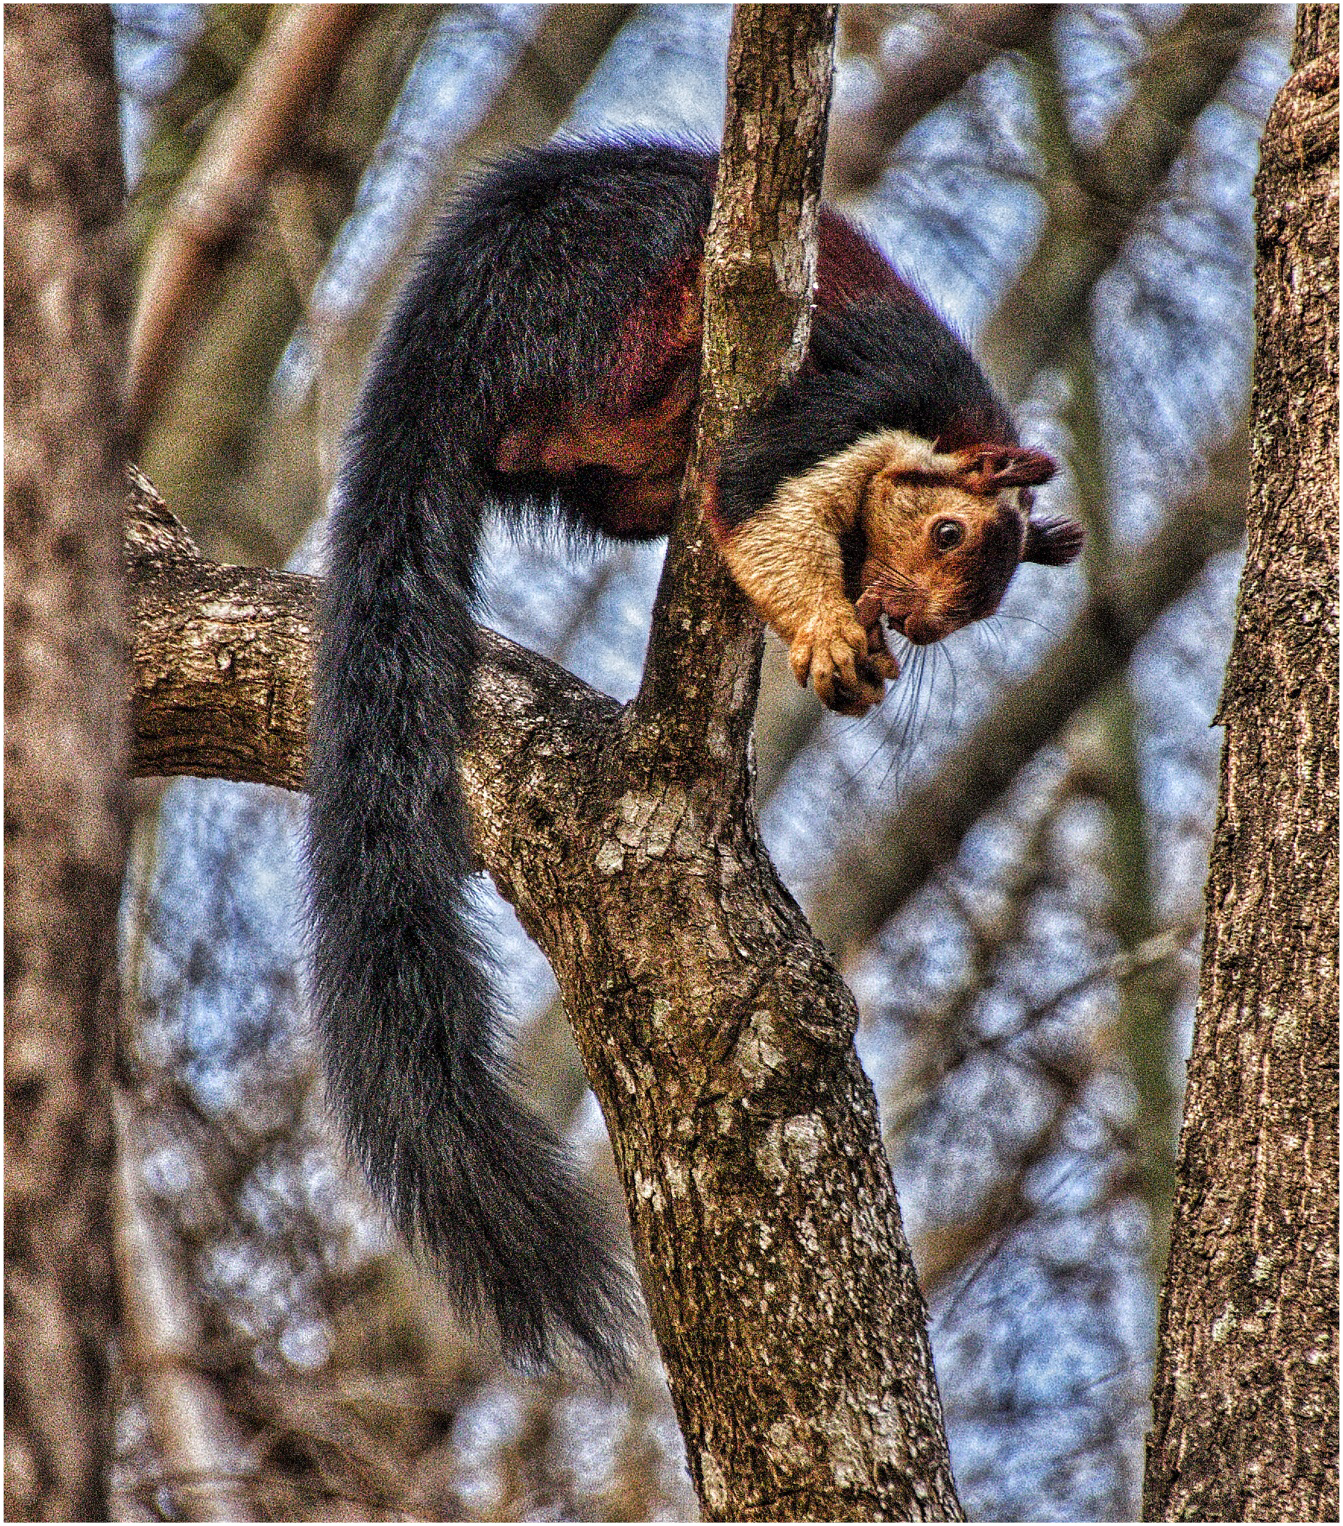 Giant Squirrel, India